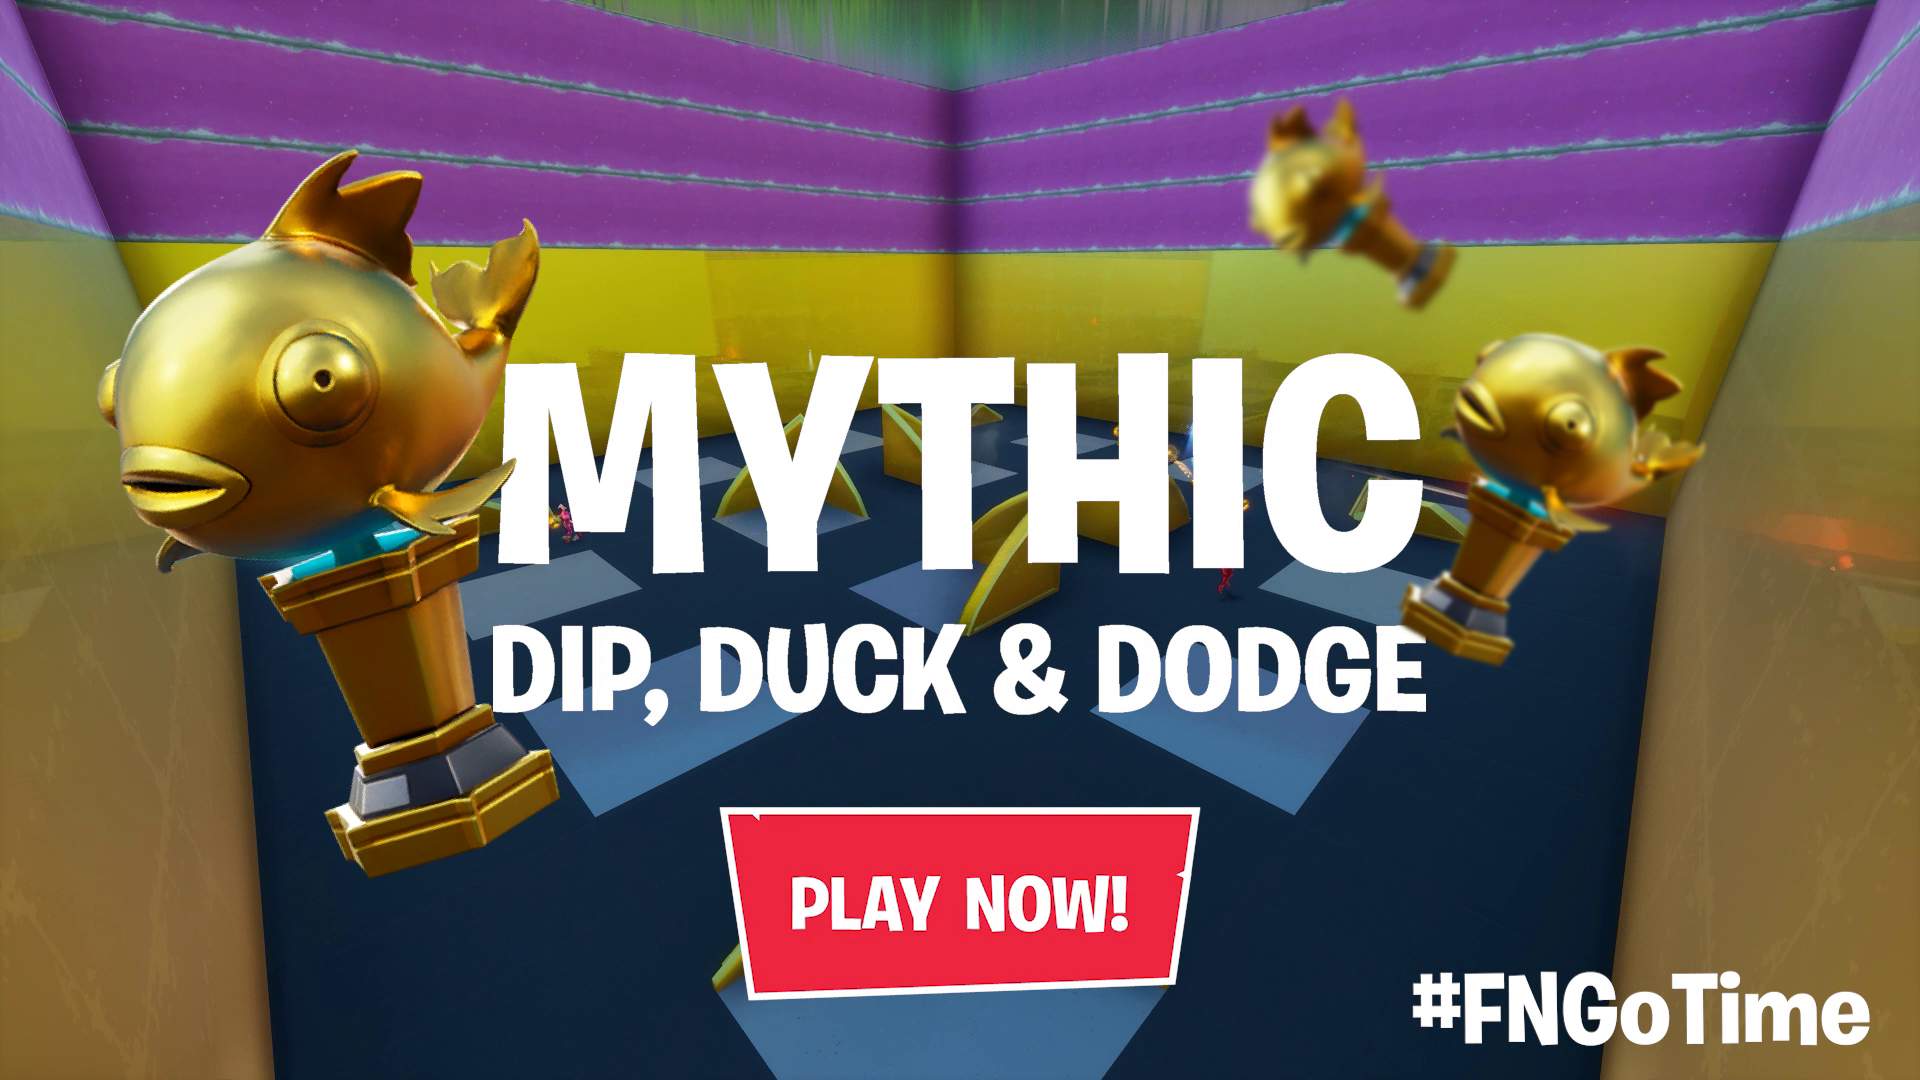 MYTHIC DIP, DUCK & DODGE